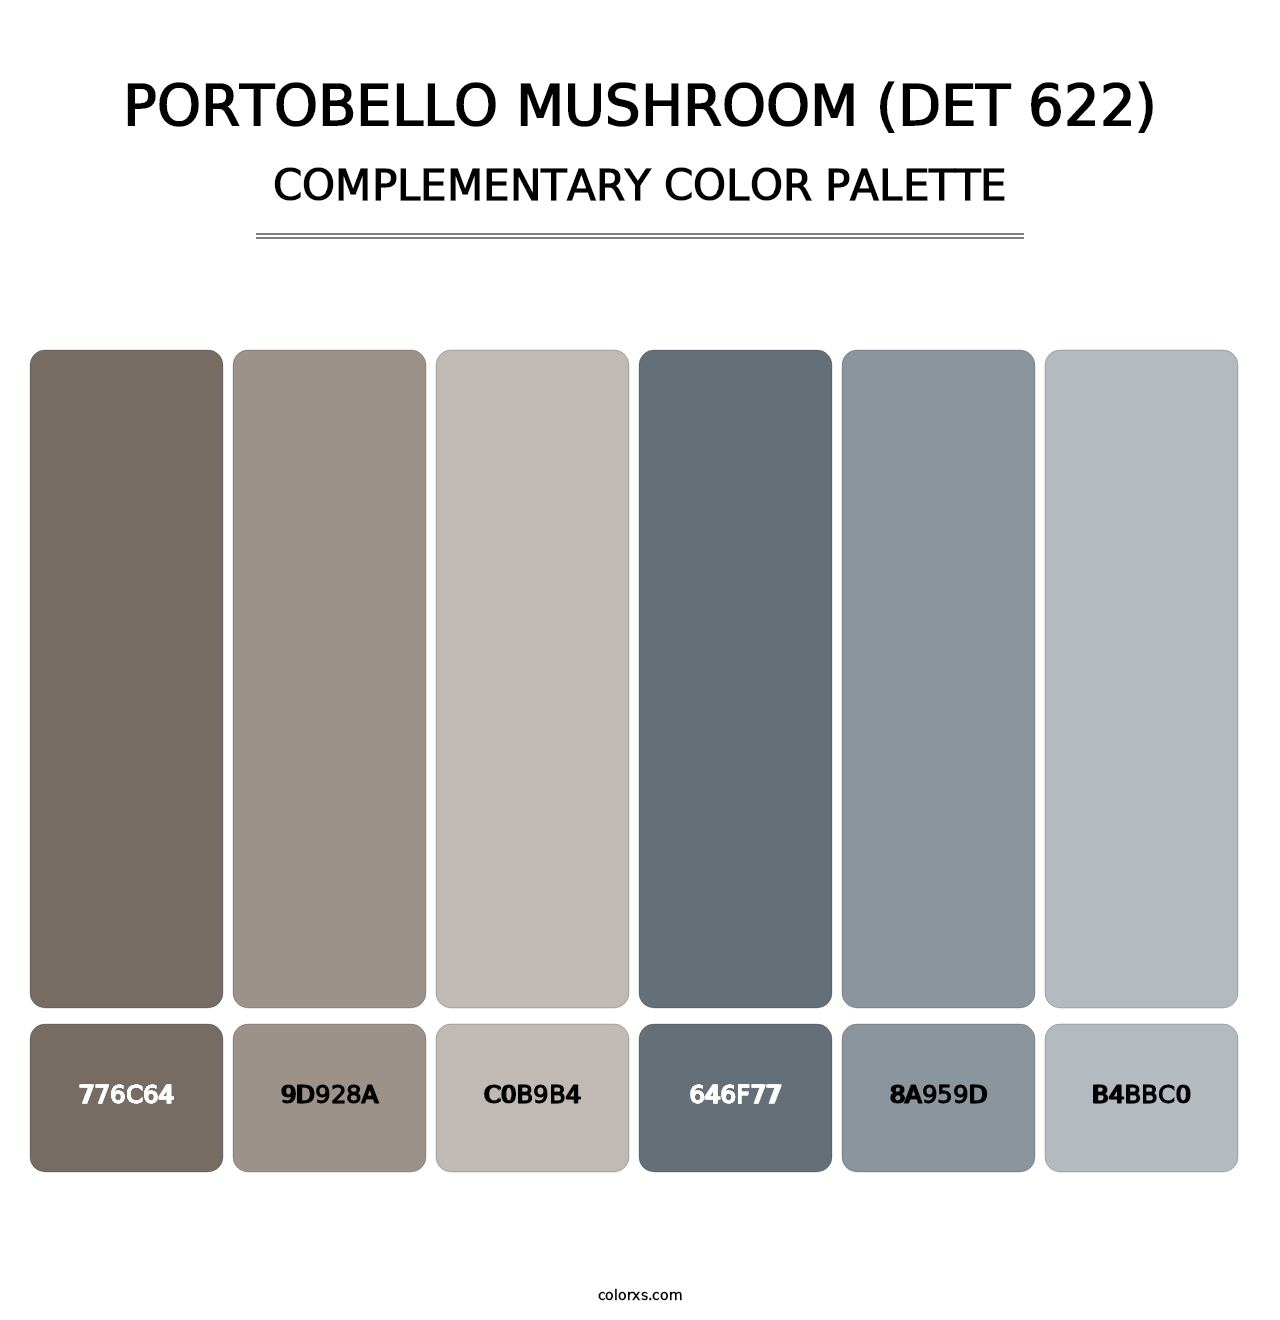 Portobello Mushroom (DET 622) - Complementary Color Palette